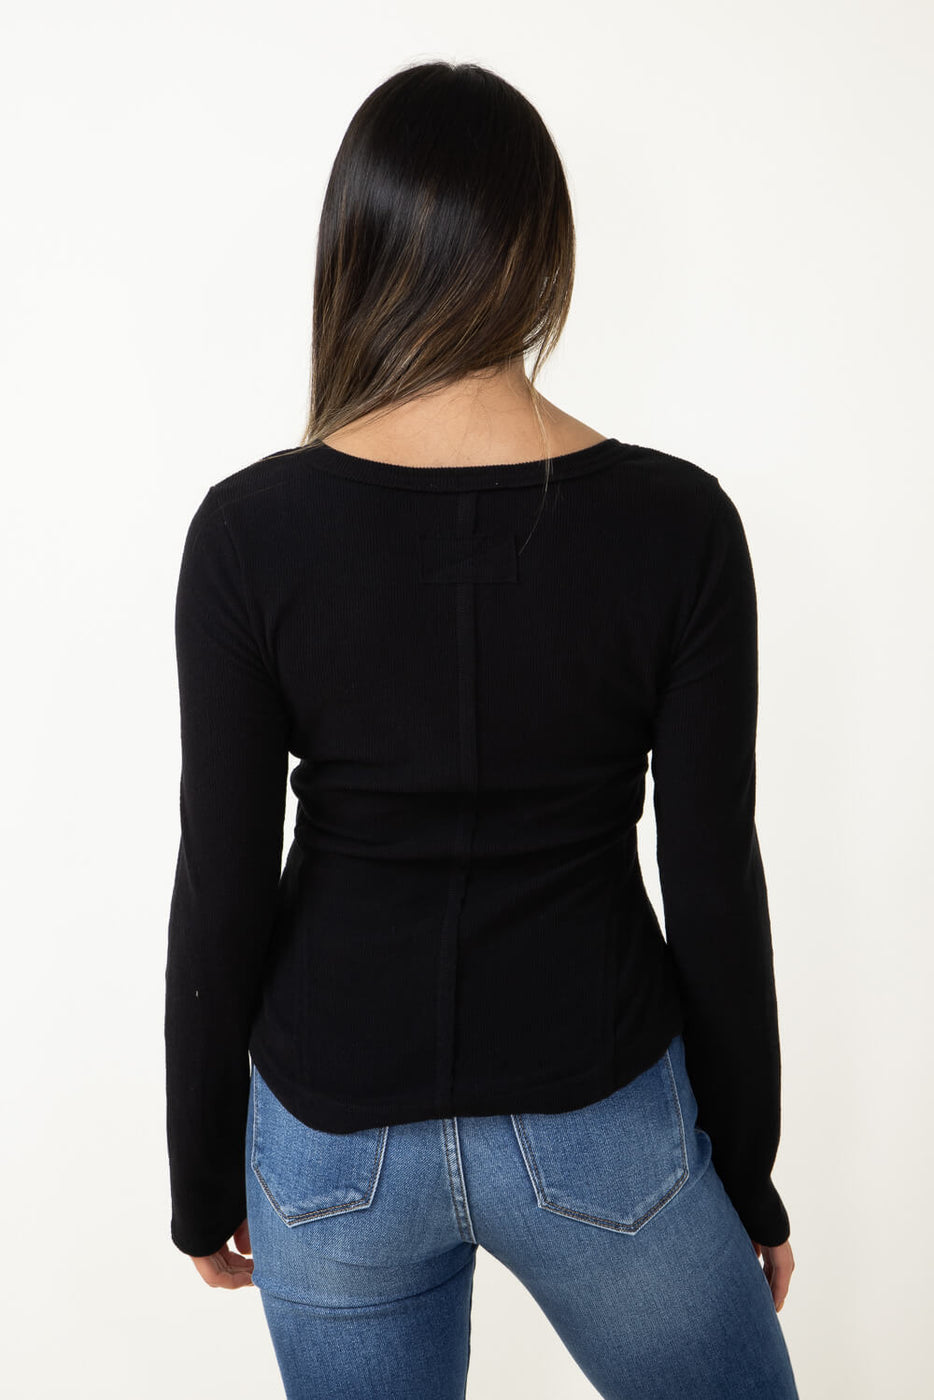 STYLE & CO. Womens Black Split Neck Knit Shirt Henley Top Petites PS NWT  $20.00 - PicClick AU